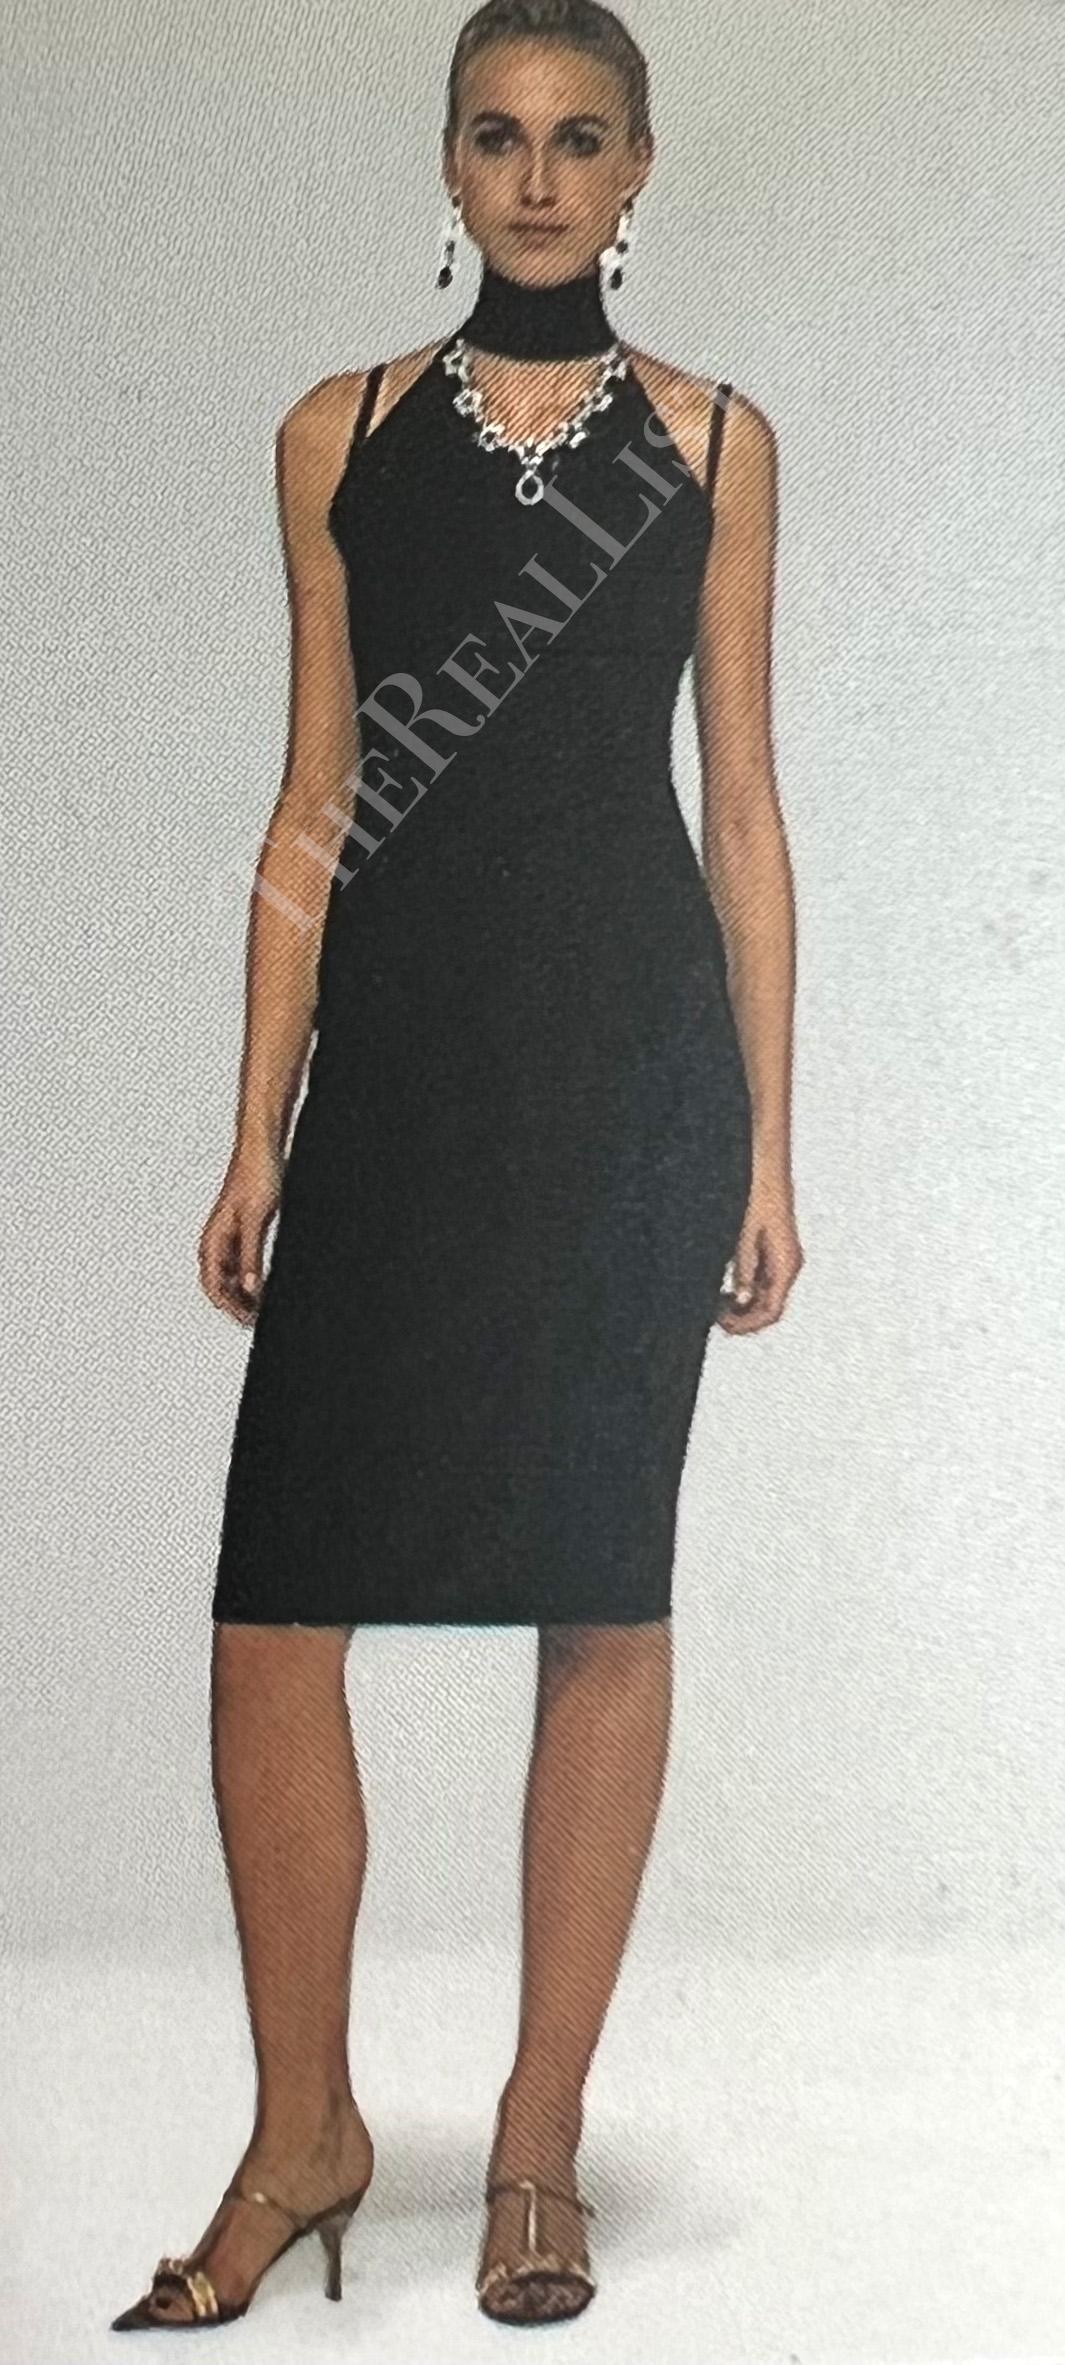 Voici une fabuleuse robe noire Dolce & Gabbana à col licou orné de pierres précieuses. Issue de la collection automne/hiver 2001, cette robe a été présentée dans une version à encolure dégagée lors du défilé de la saison. Cette sensuelle robe noire